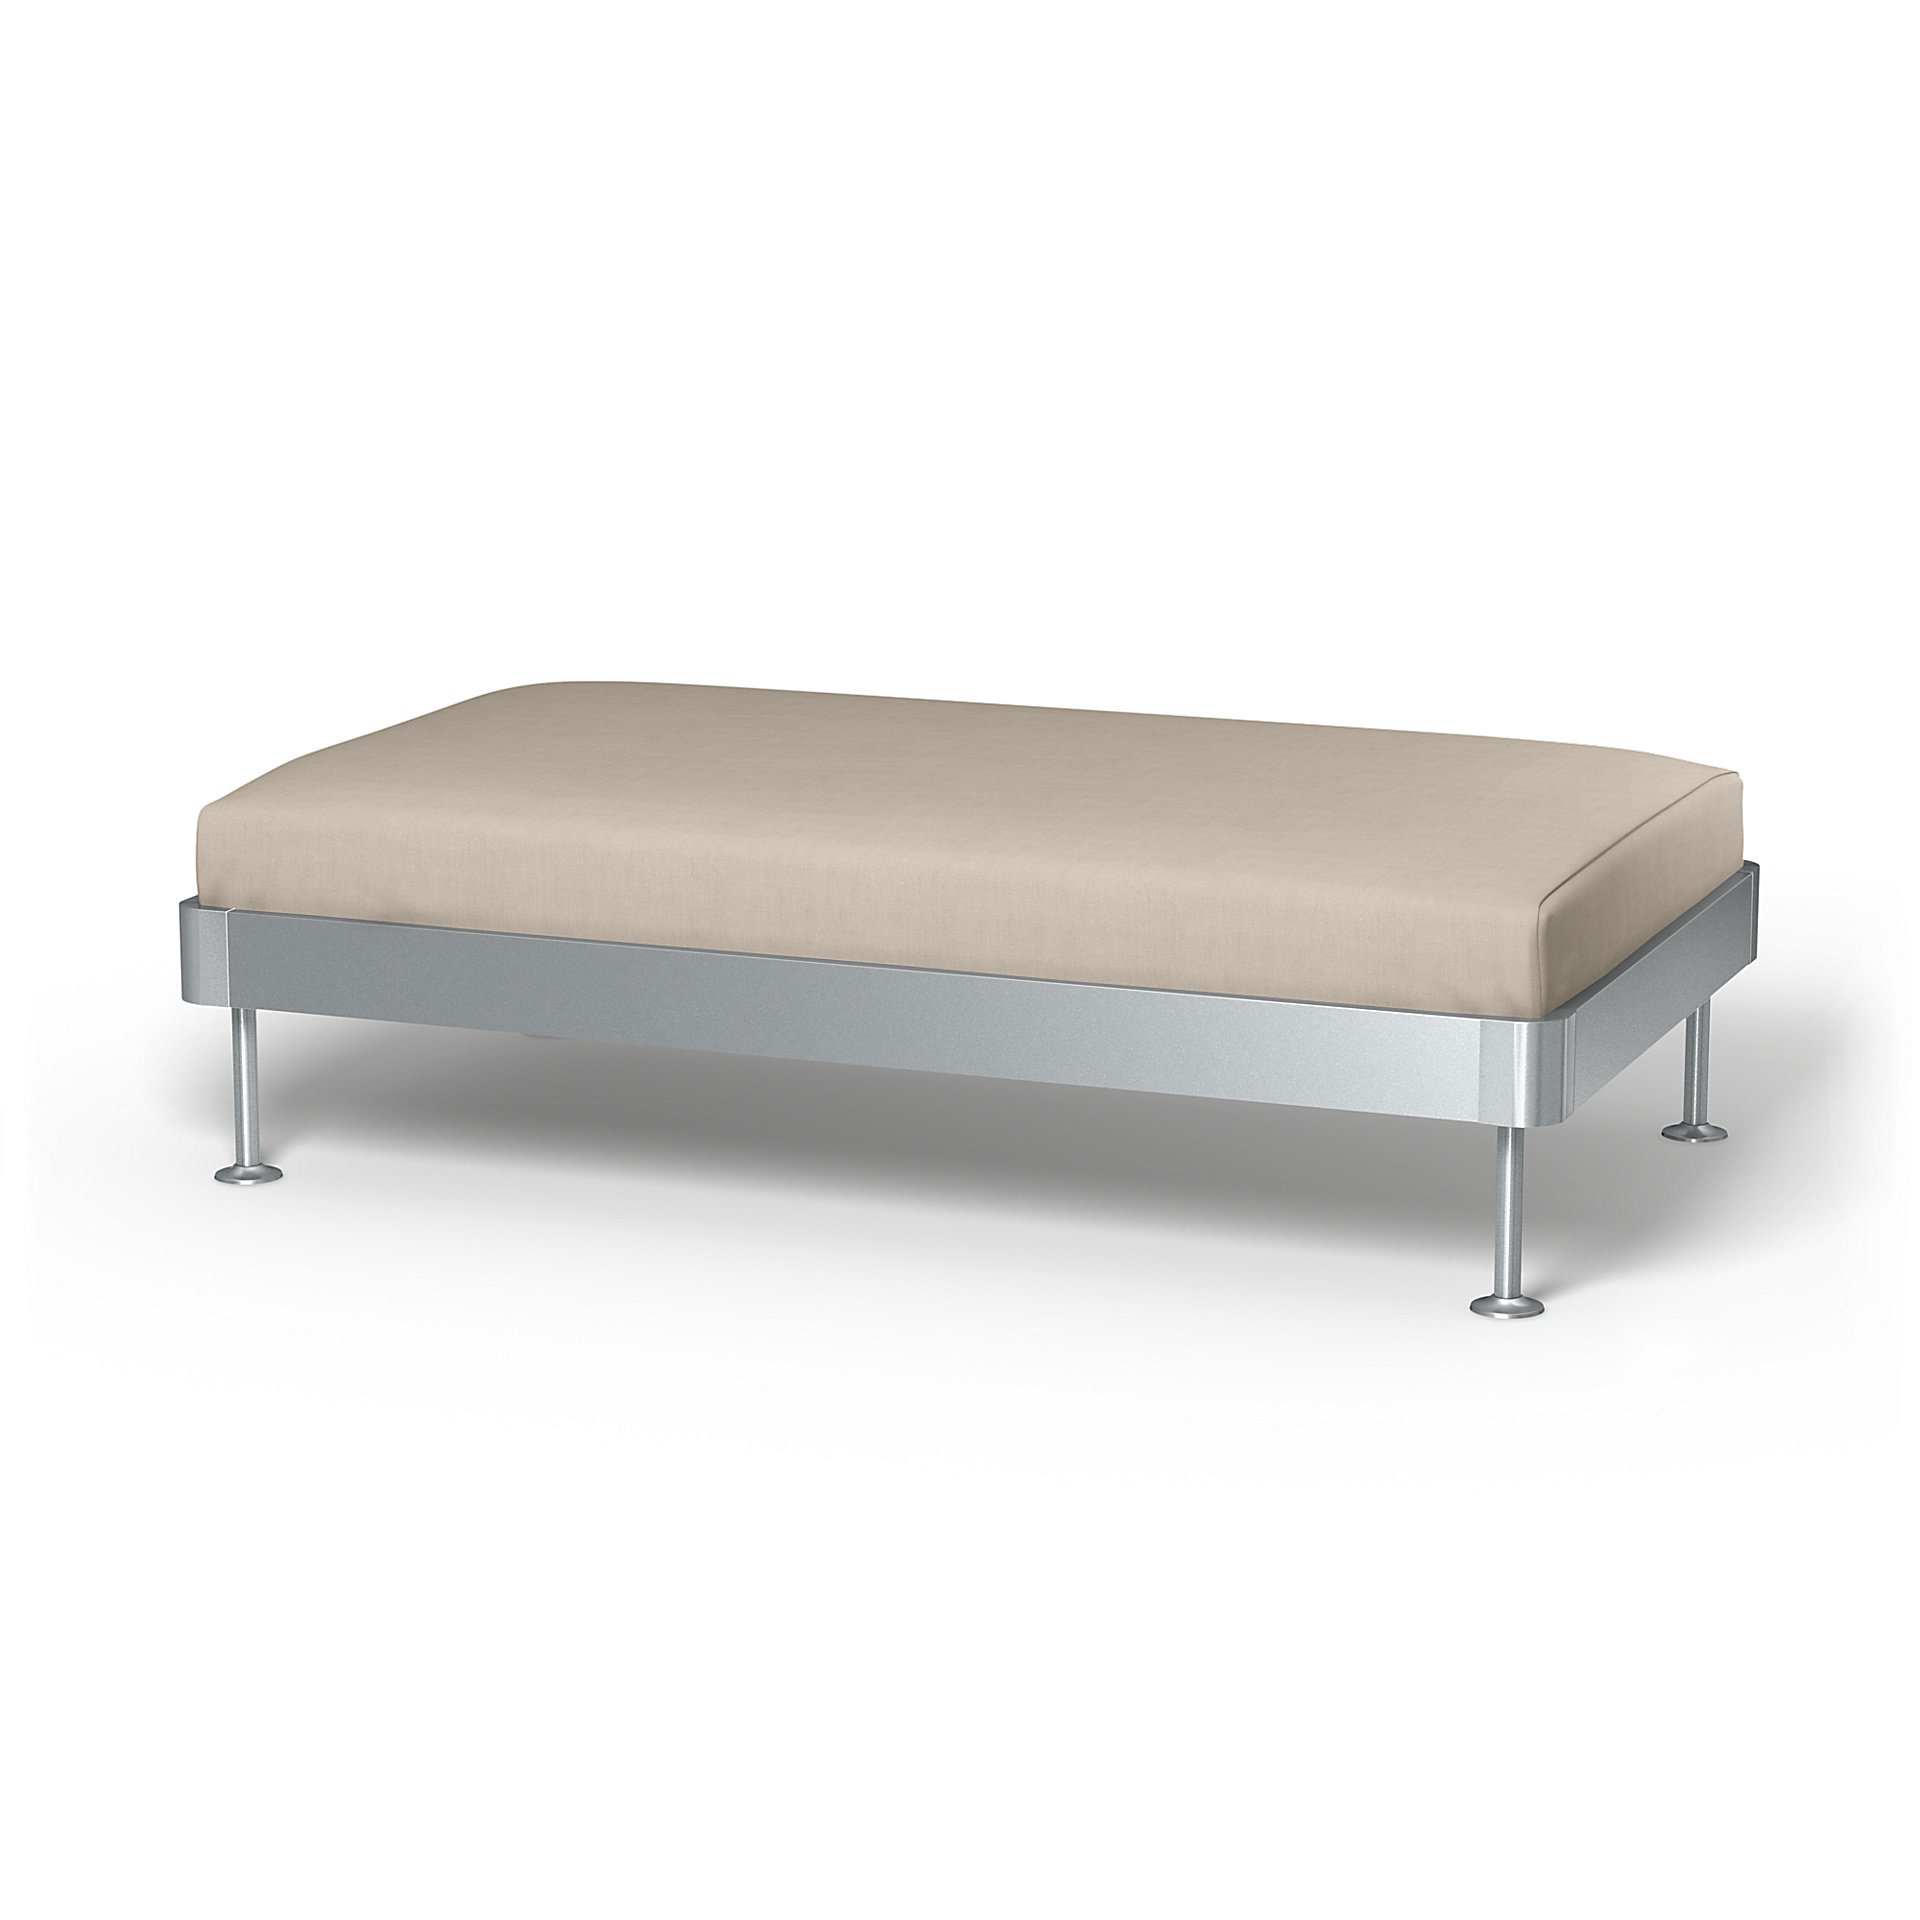 IKEA - Delaktig 2 Seat Platform Cover, Parchment, Linen - Bemz